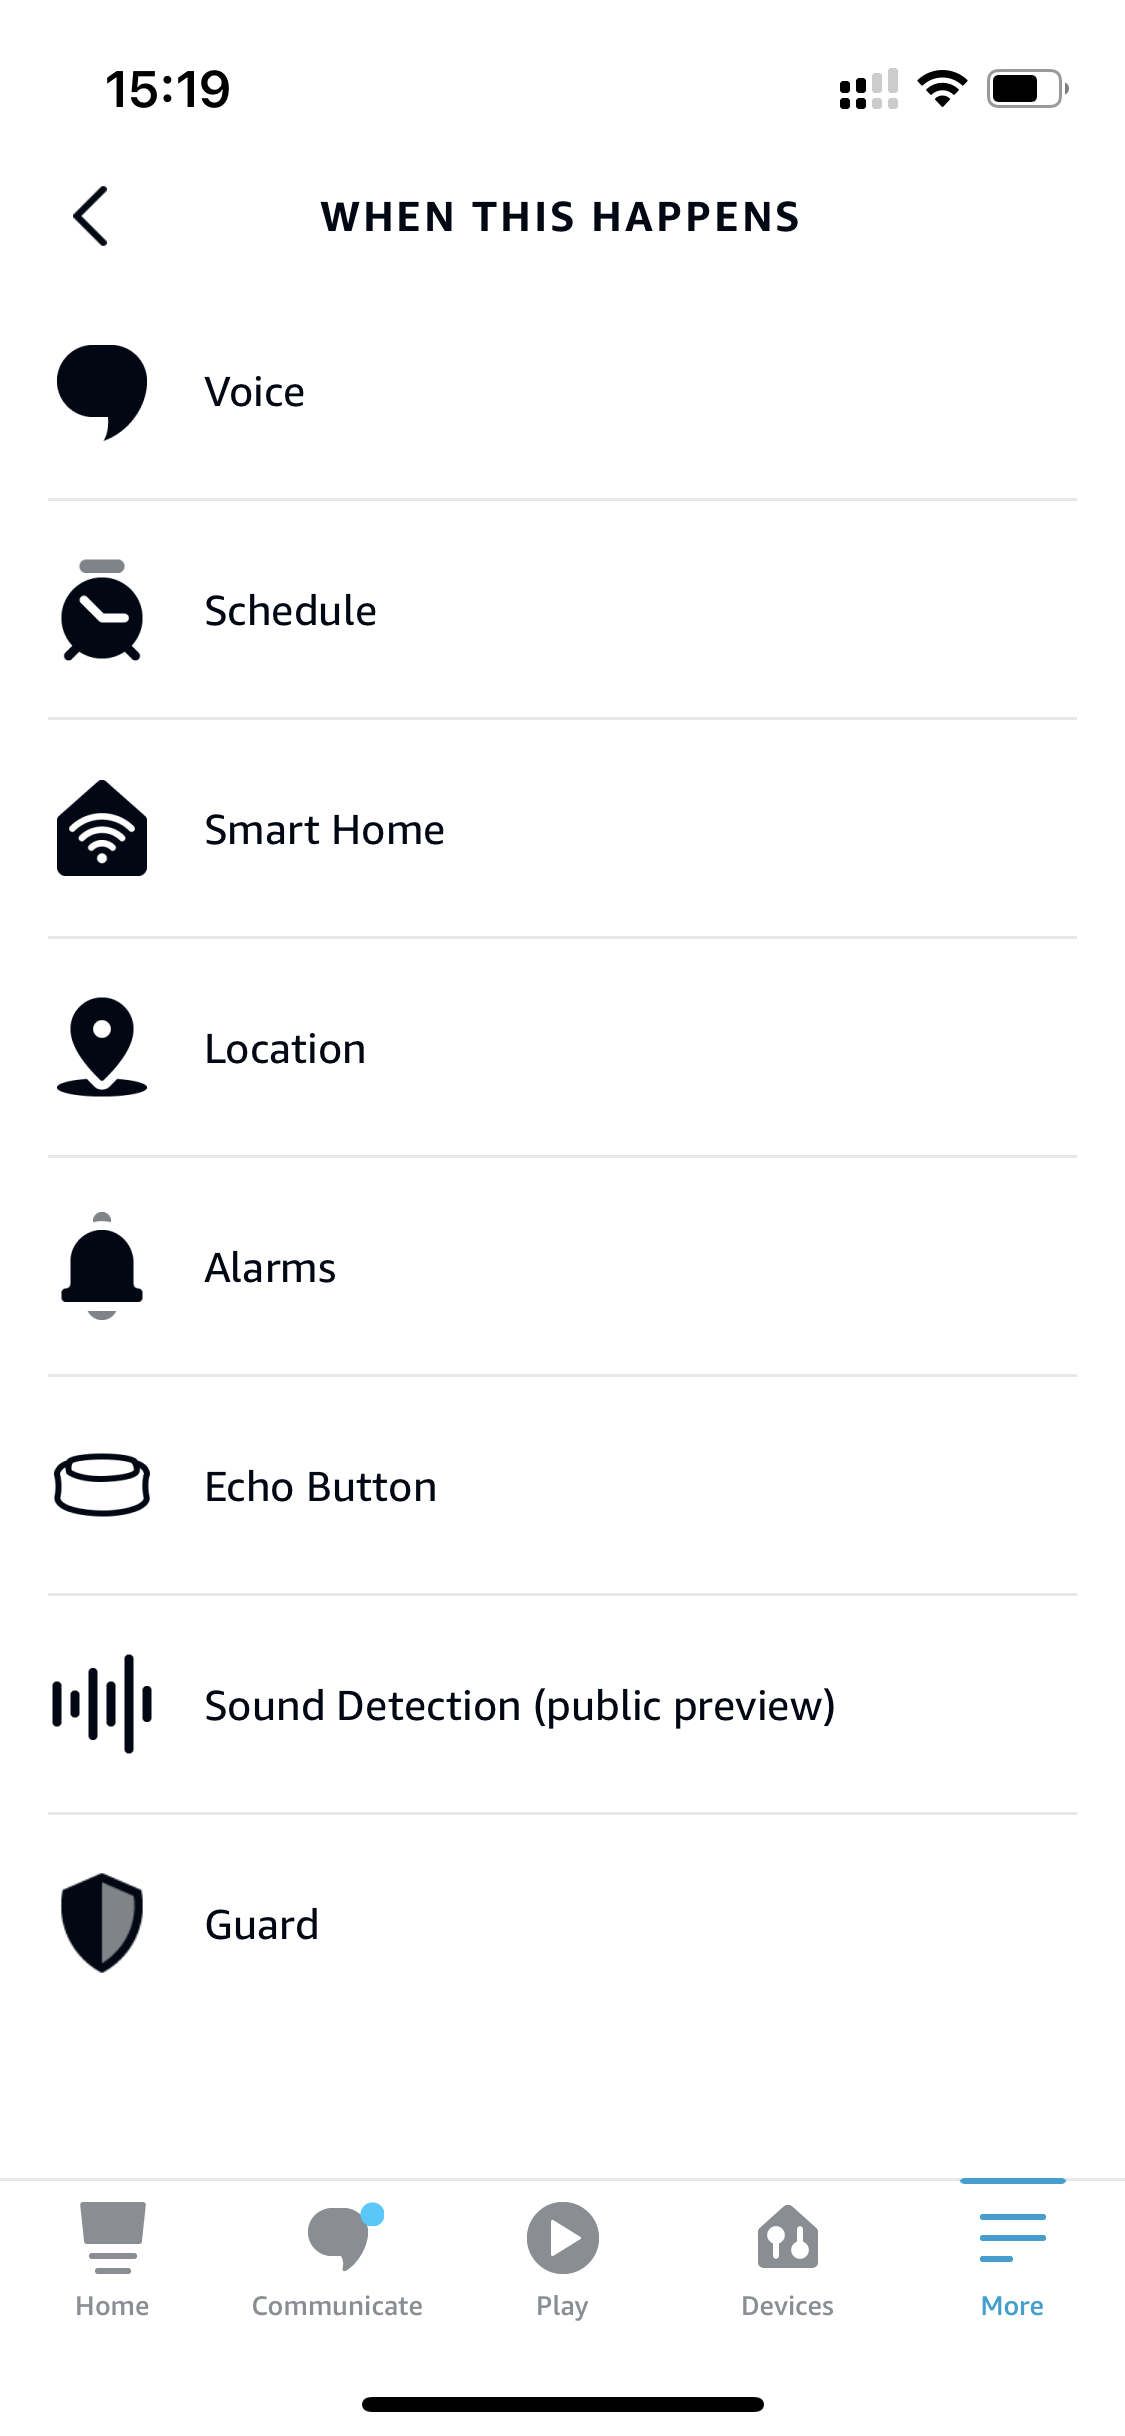 Nowa funkcja Amazon Echo - Alexa jest w stanie wykryć, co dzieje się w naszym domu